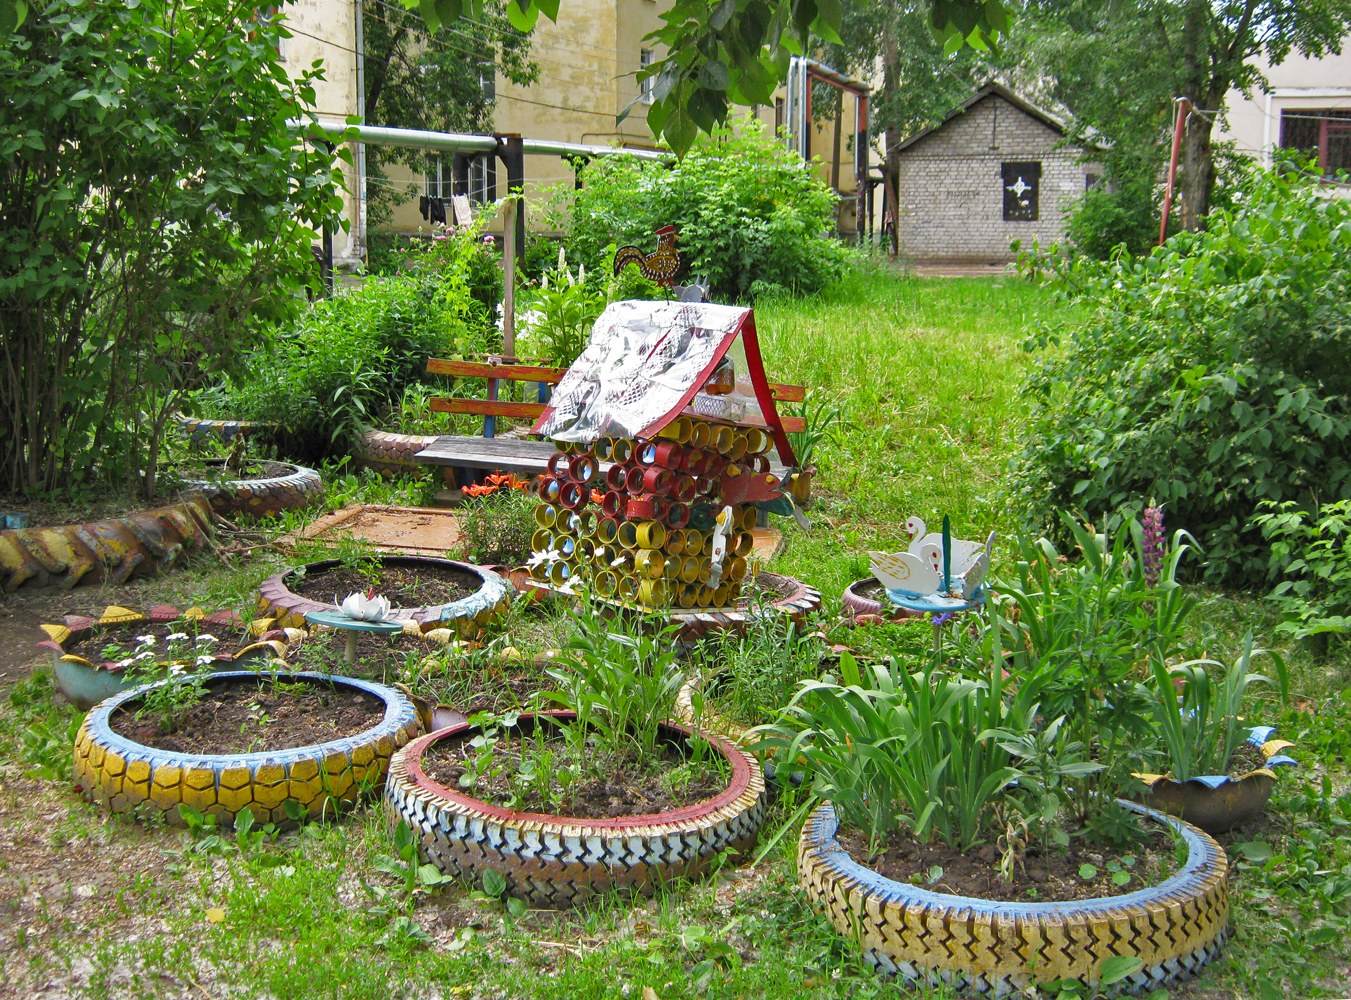 Садовый декор своими руками - идеи для вдохновения от экспертов Eli.ru